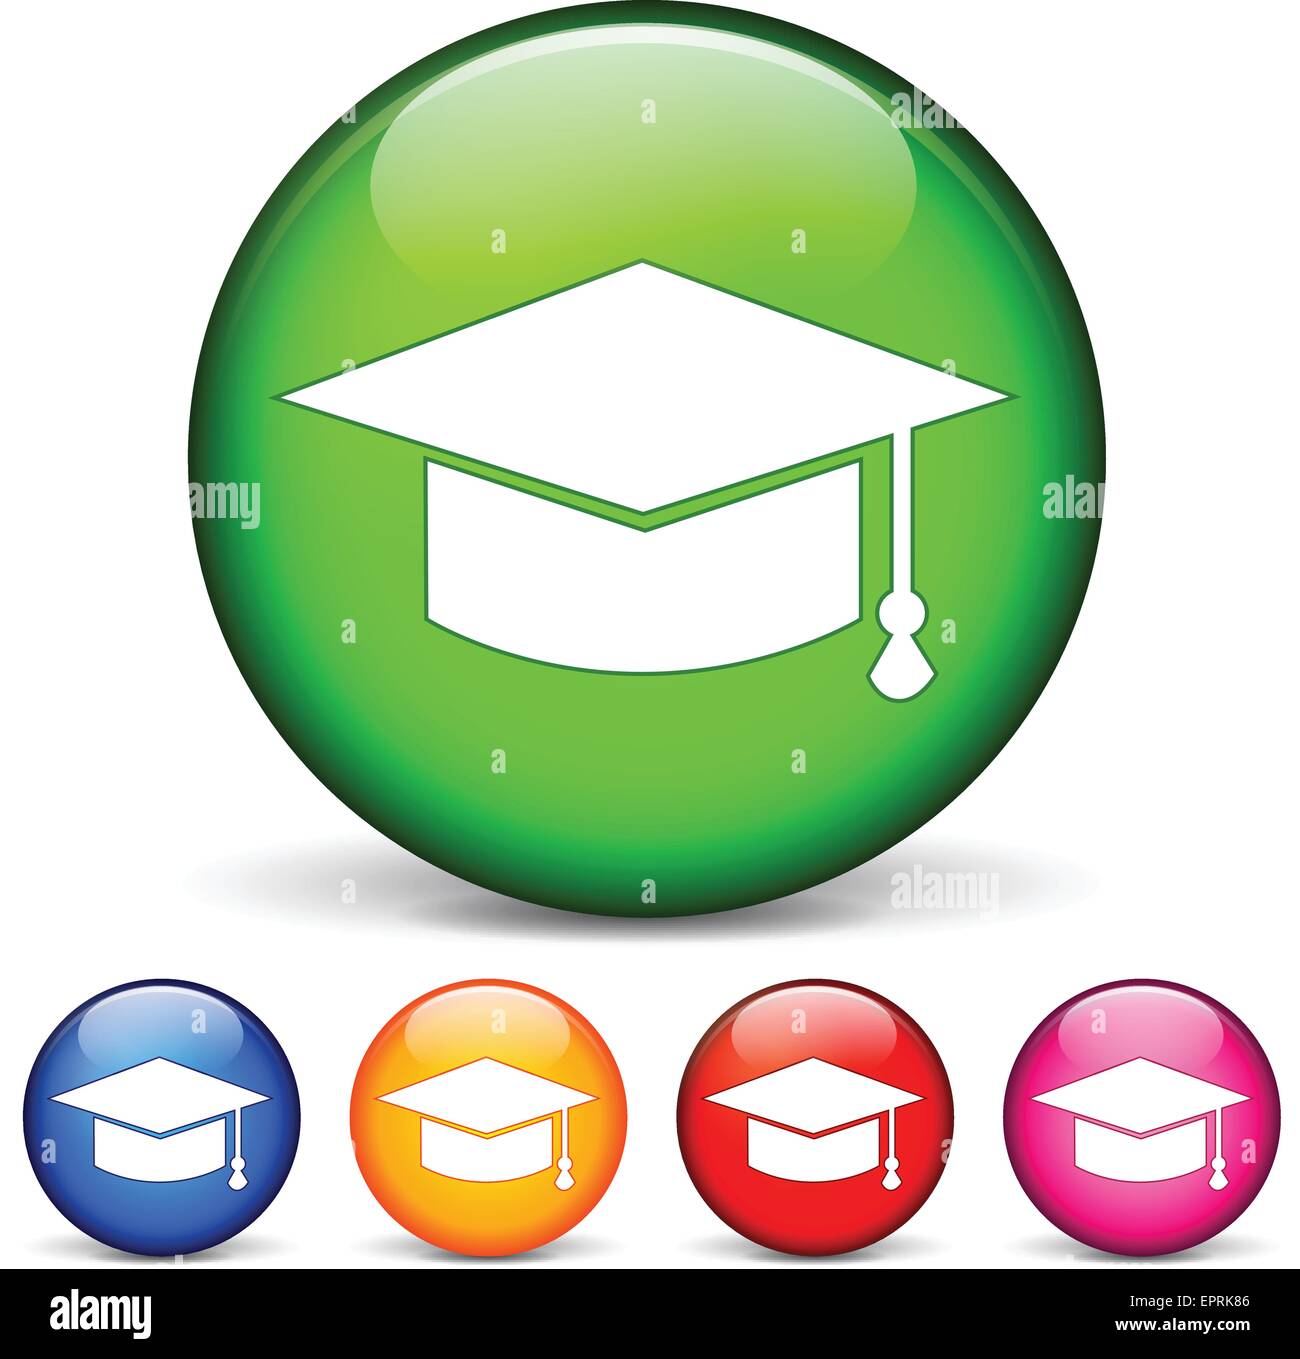 Illustrazione vettoriale di icone cerchio per l'istruzione Illustrazione Vettoriale